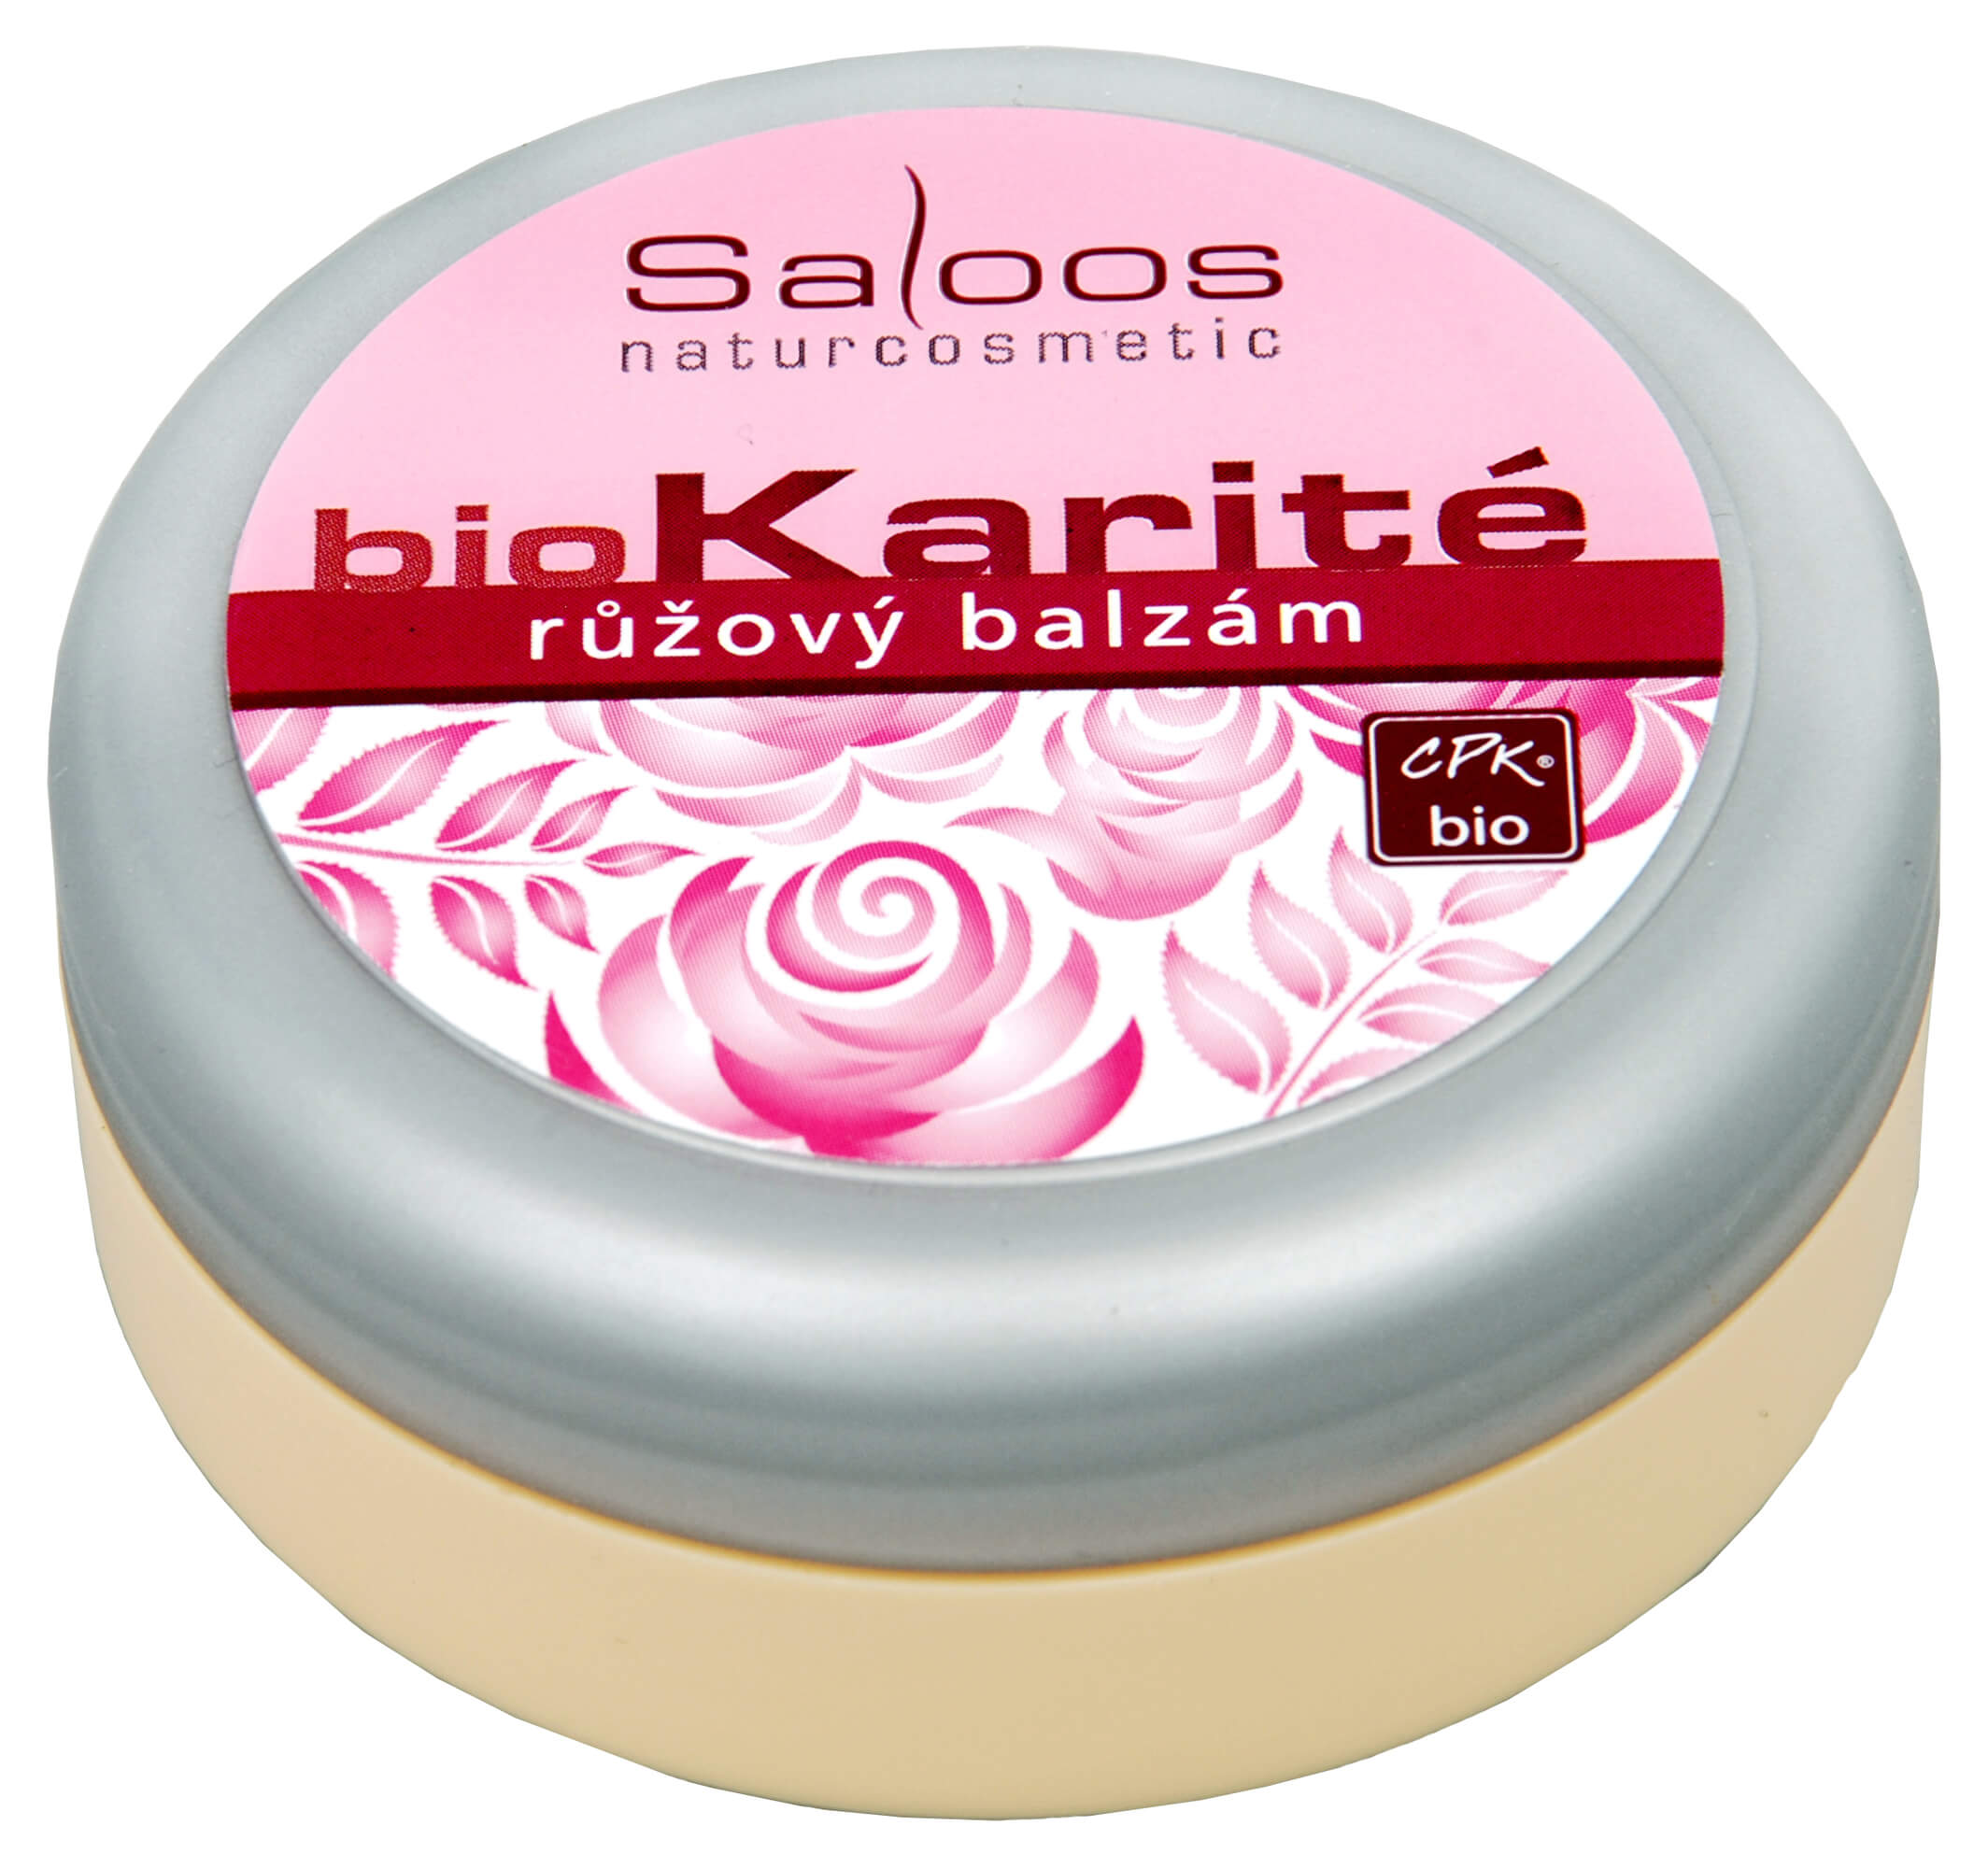 Zobrazit detail výrobku Saloos Bio Karité balzám - Růžový 50 ml